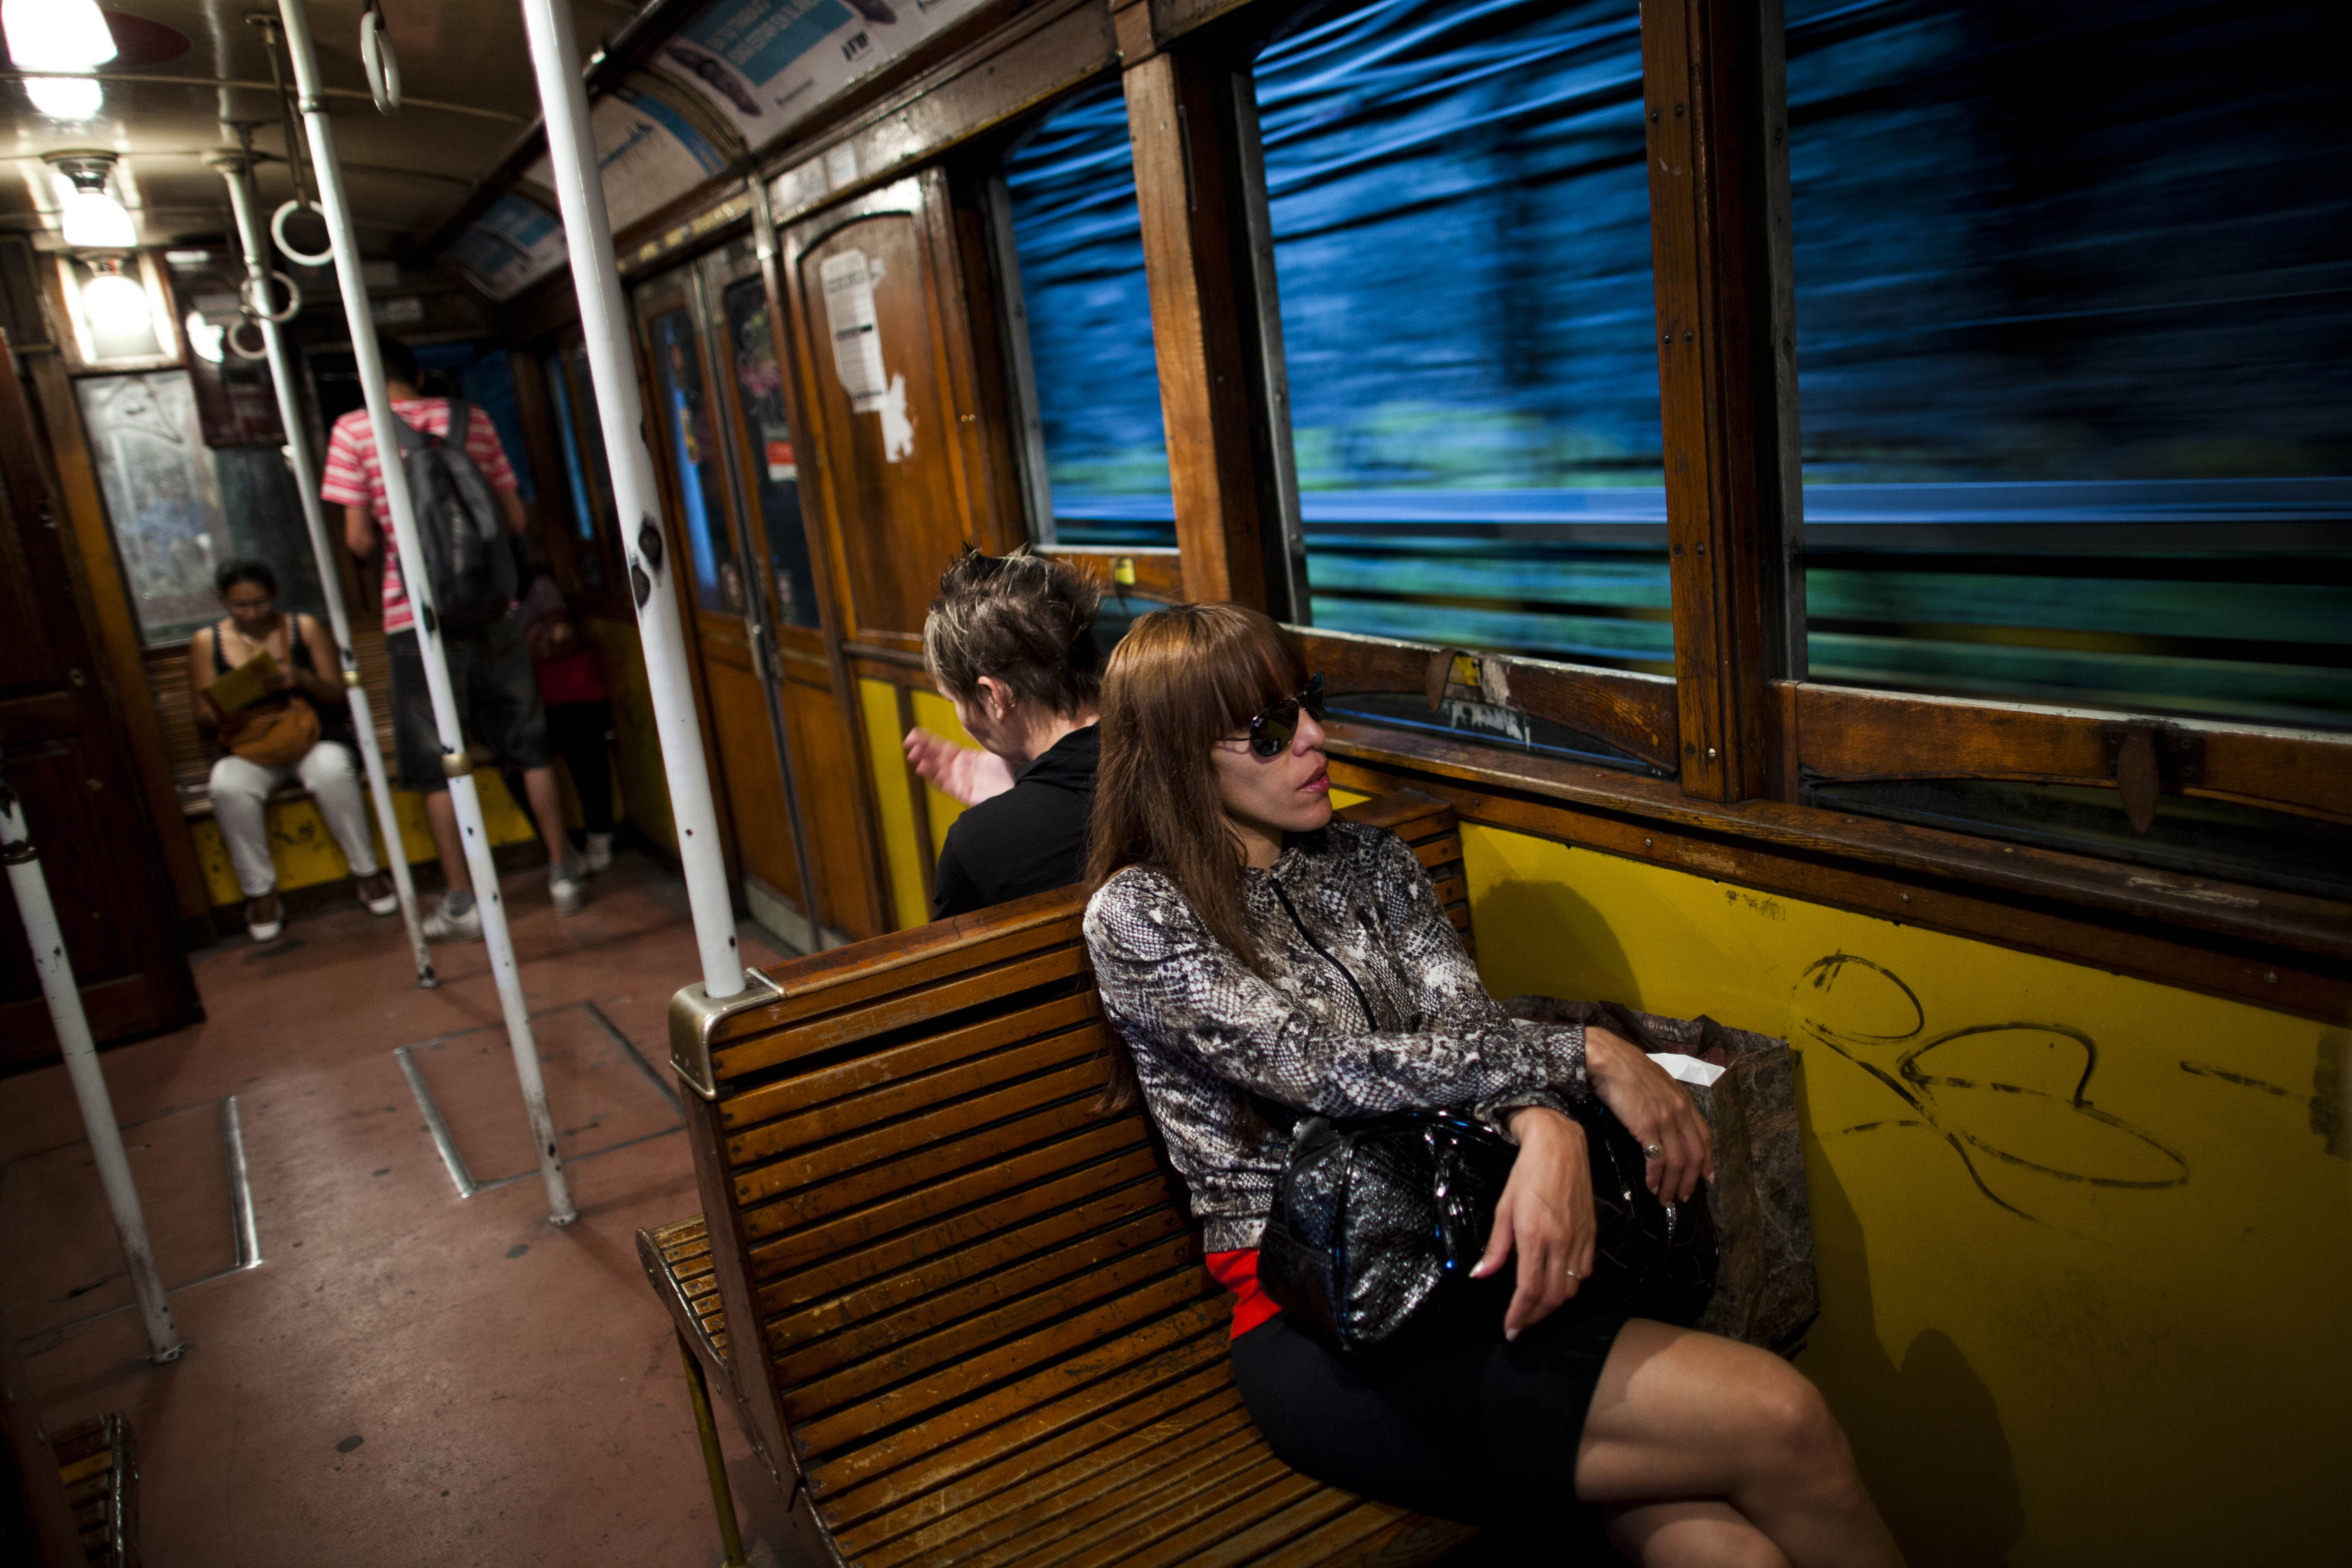 Τελευταία διαδρομή για τους ιστορικούς βέλγικους συρμούς στο μετρό του Μπουένος Αϊρες